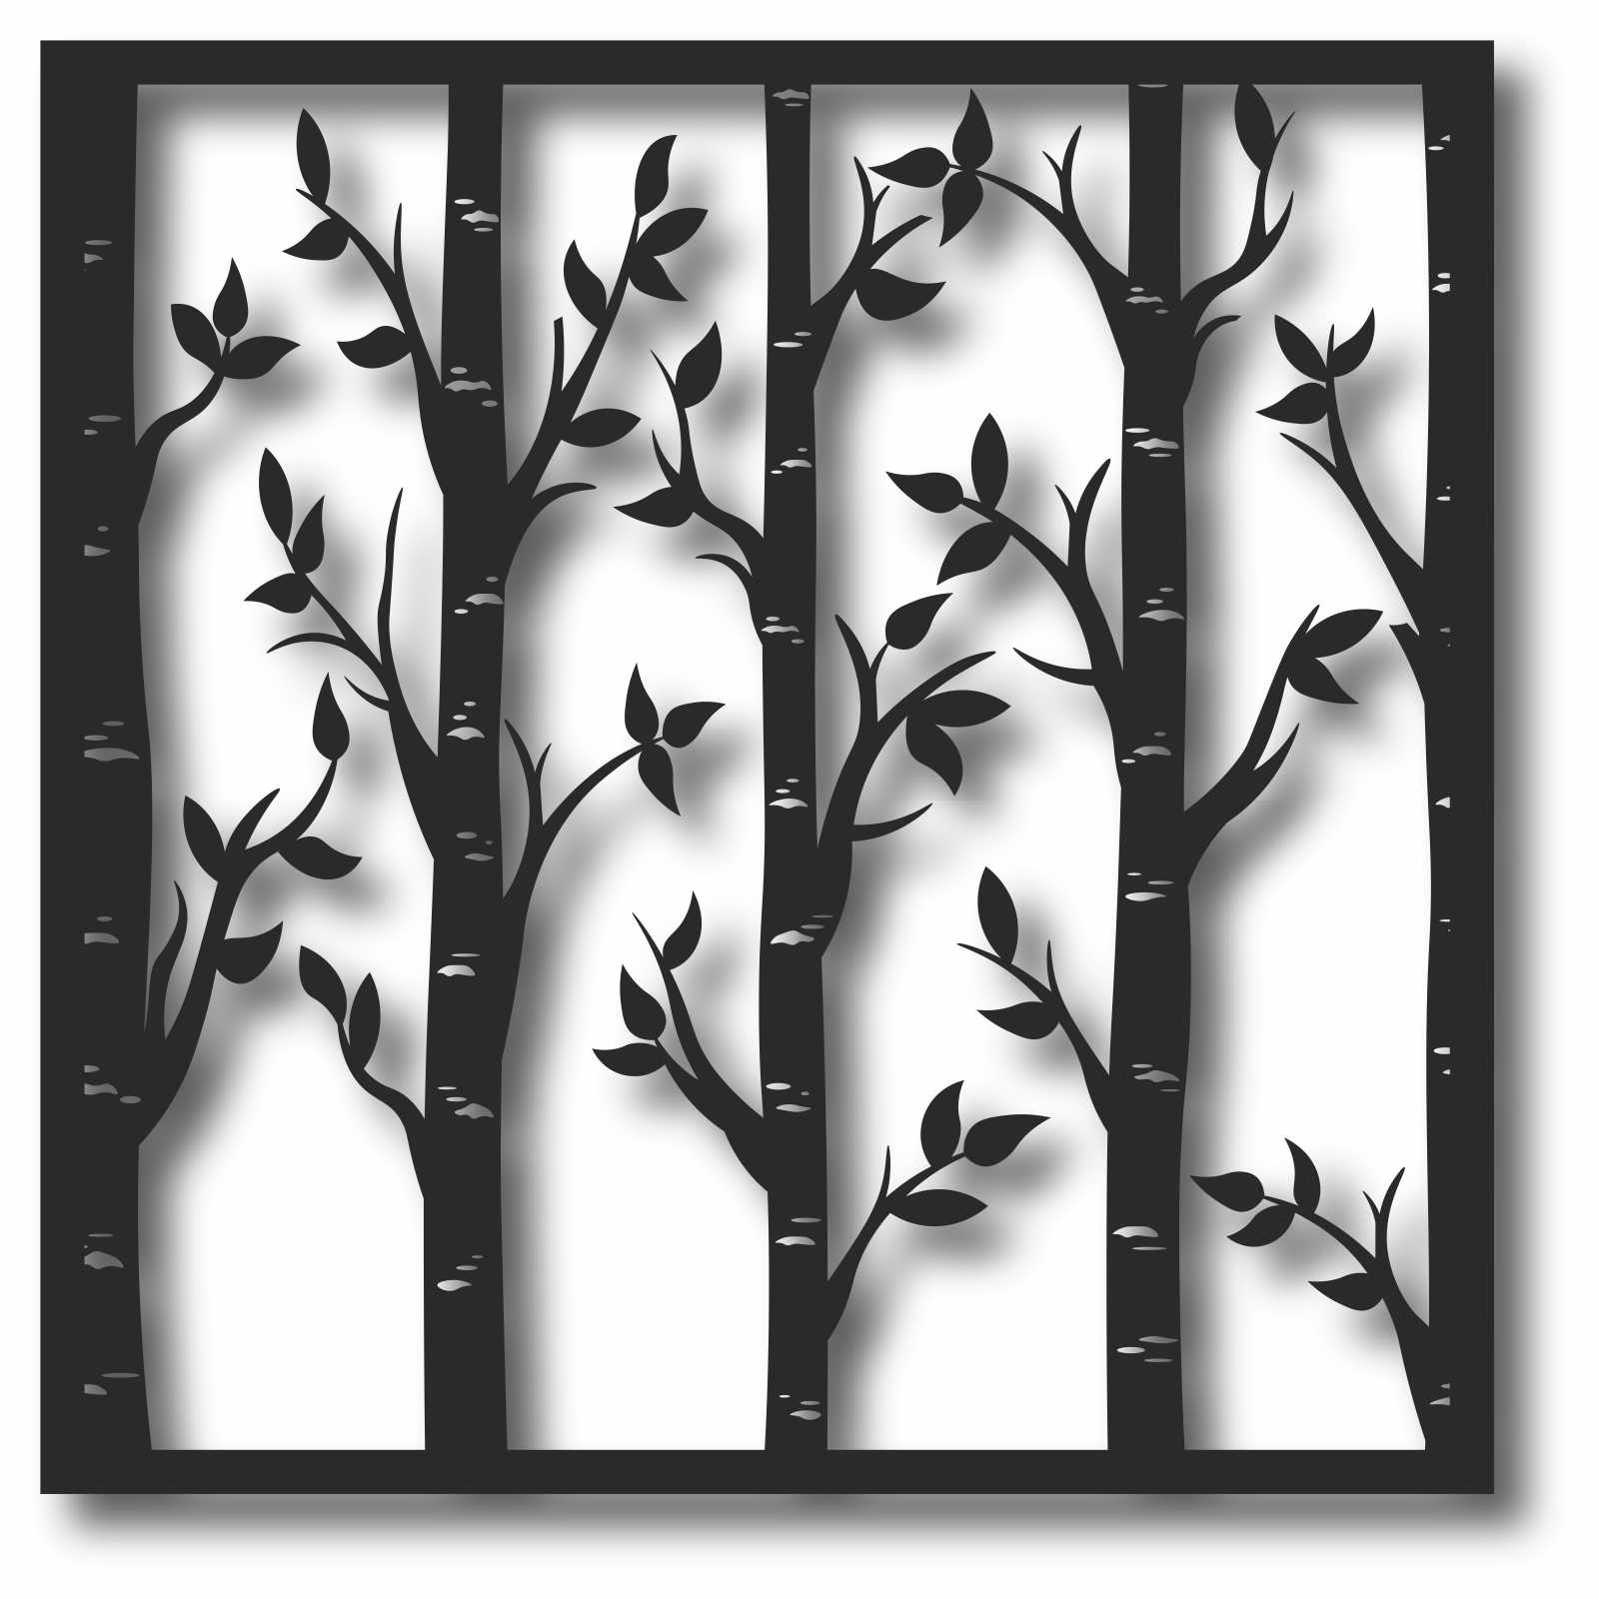 Bild Wandbild 3D Wandtattoo Acryl Mobile Bäume Birken Bäumchen